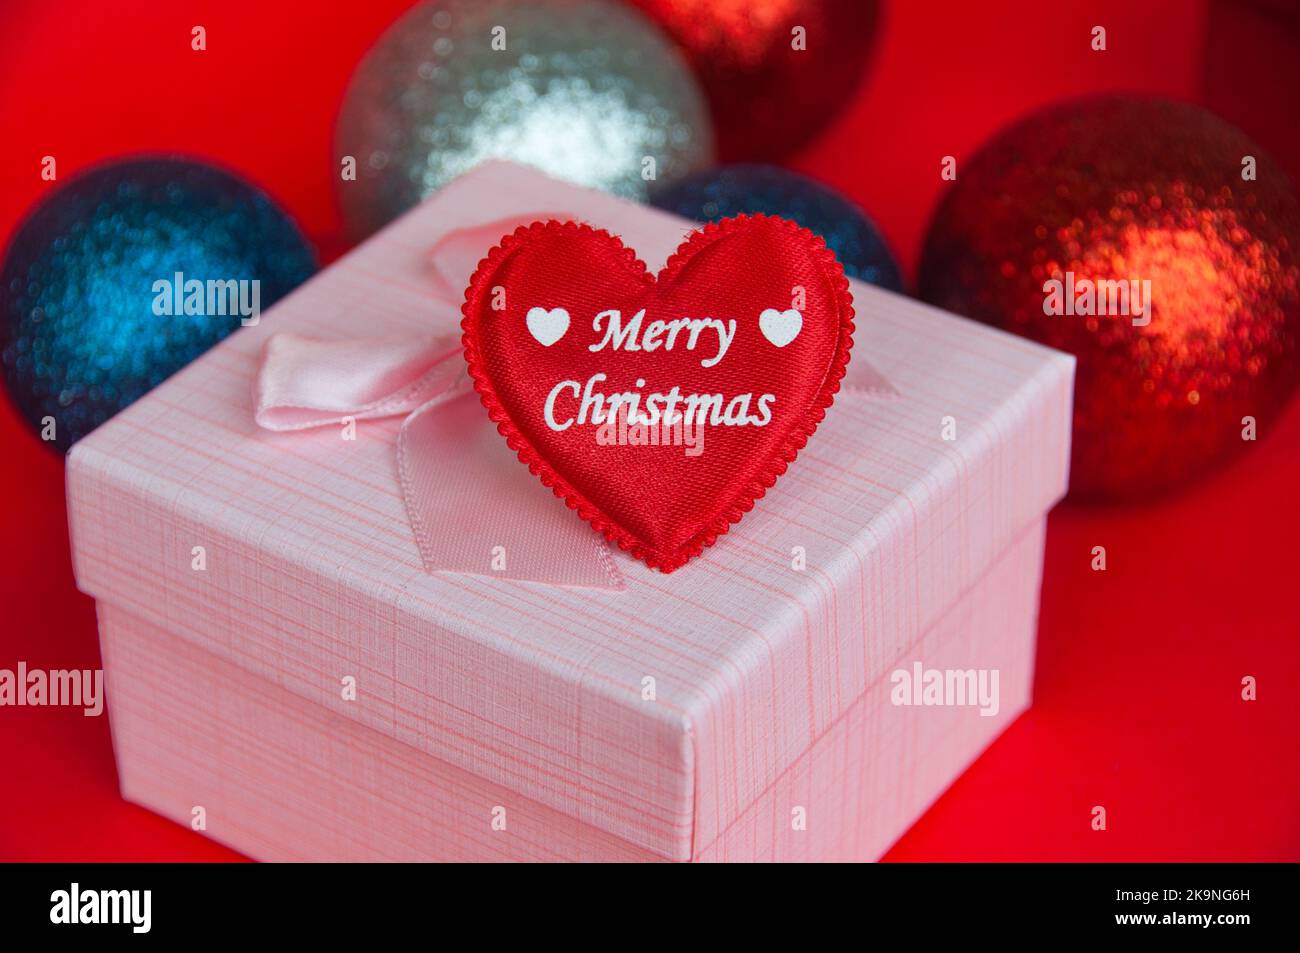 Frohe Weihnachten Text auf Herz-Form auf rosa Farbe Geschenk mit Weihnachtsdekoration Hintergrund. Weihnachtsgeschenk und Copy Space Konzept. Stockfoto